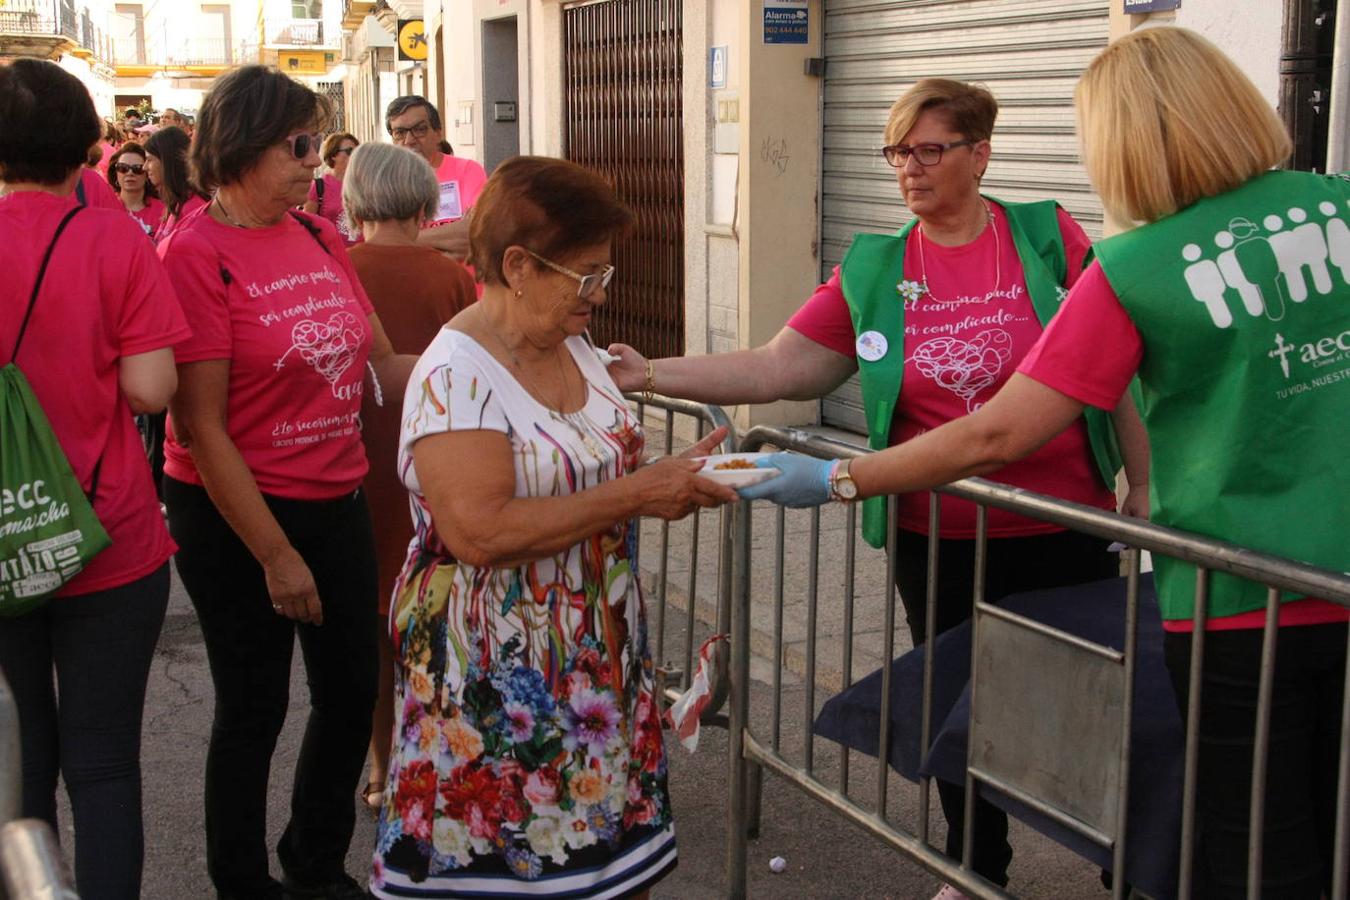 El 6 de octubre se celebró la V Marcha Rosa Contra el Cáncer de Mama de Malpartida de Cáceres, organizada por la junta local de Malpartida de Cáceres de la AECC, con la colaboración del Ayuntamiento de la localidad. Tras la marcha los asistentes disfrutaron de una degustación de migas, elaboradas por Juan García y voluntarias. Finalizaron con una exhibición de zumba y bodycombat.